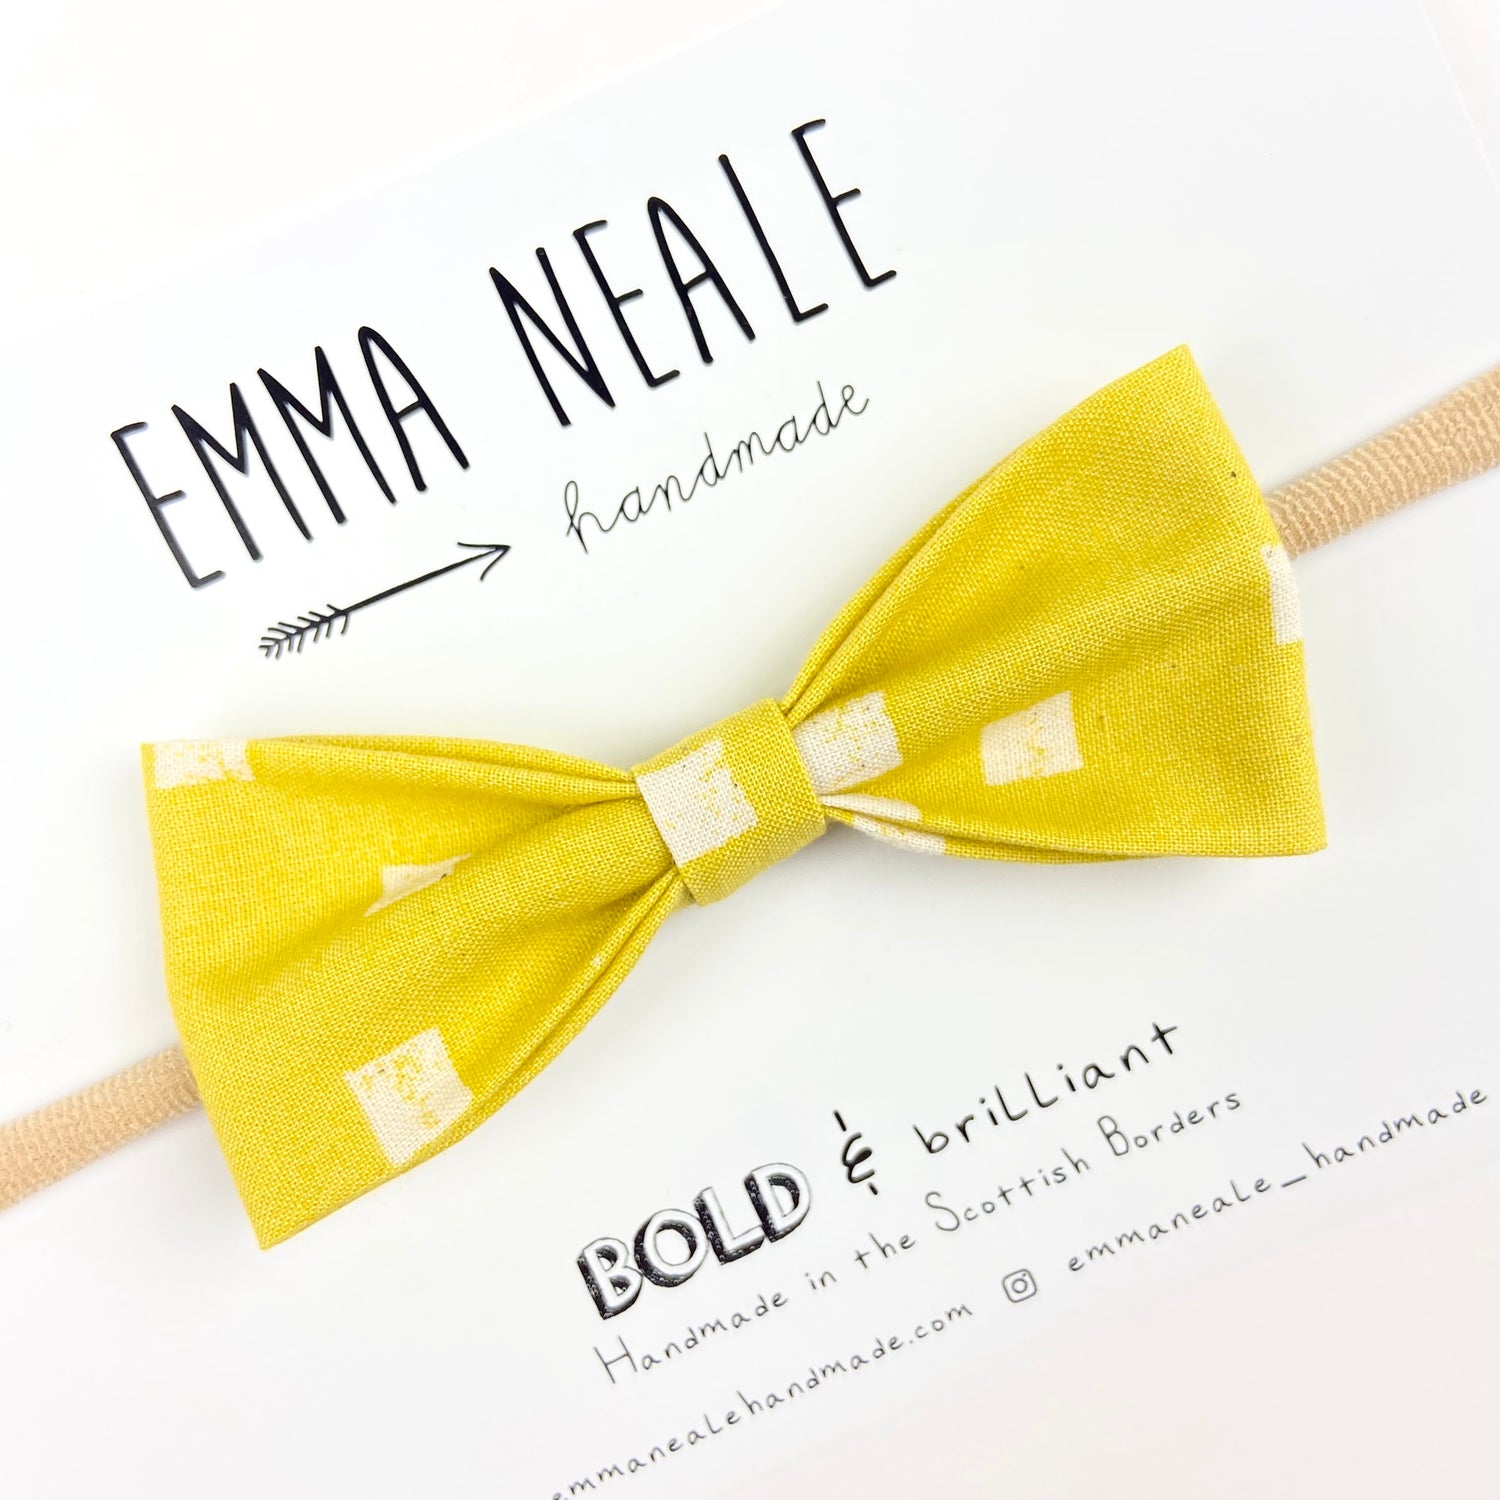 Lemondrop Ruby Bow Headband - Emma Neale Handmade